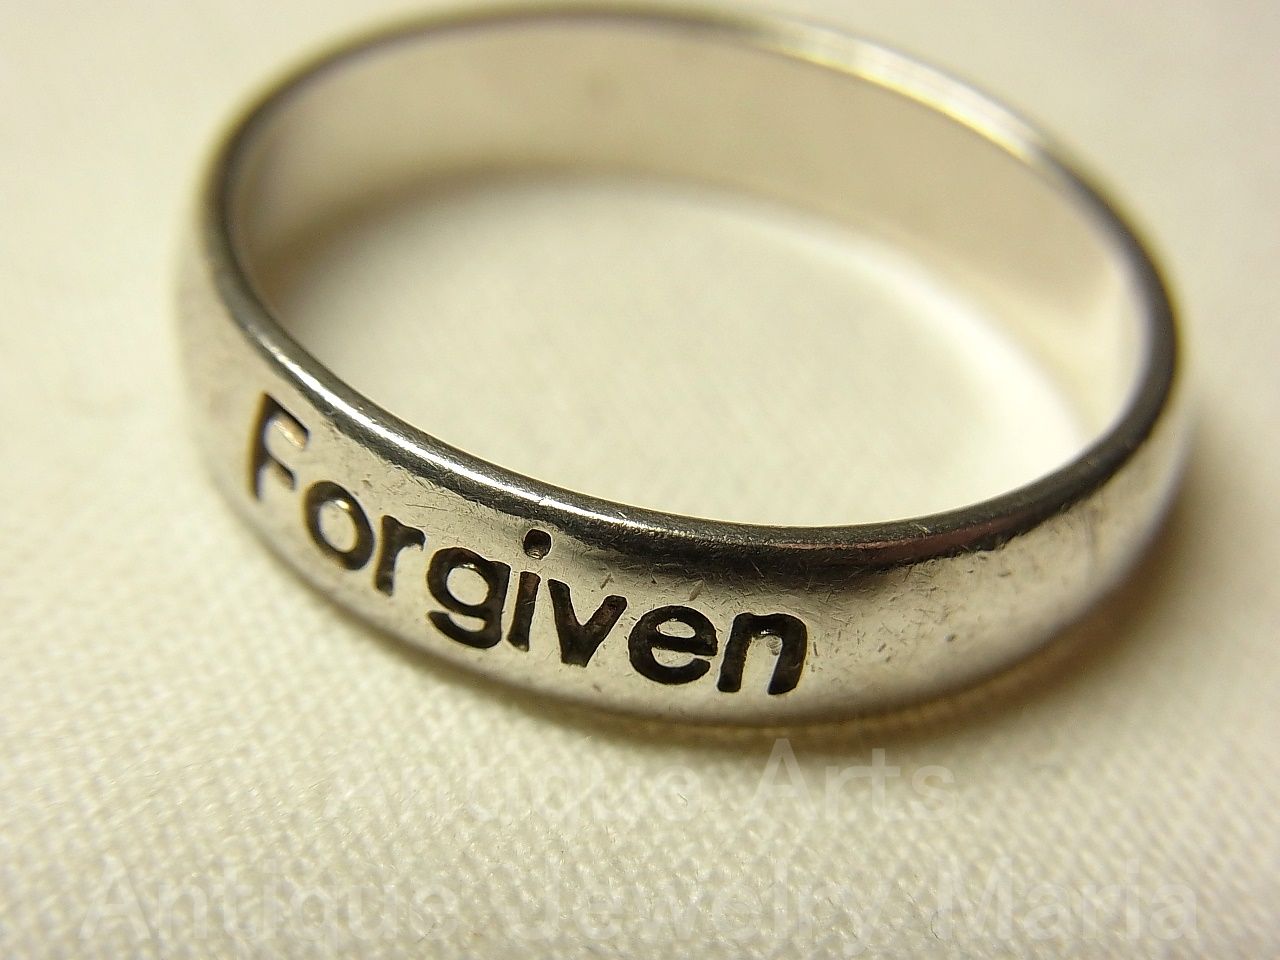 画像: “Forgiven（許された）」は神からの赦しを示す言葉:過去の過ちや罪から解放され、新たな人生への希望と前向きな未来を示す。”ヴィンテージ シルバー（銀925製）リング  サイズ：２２号